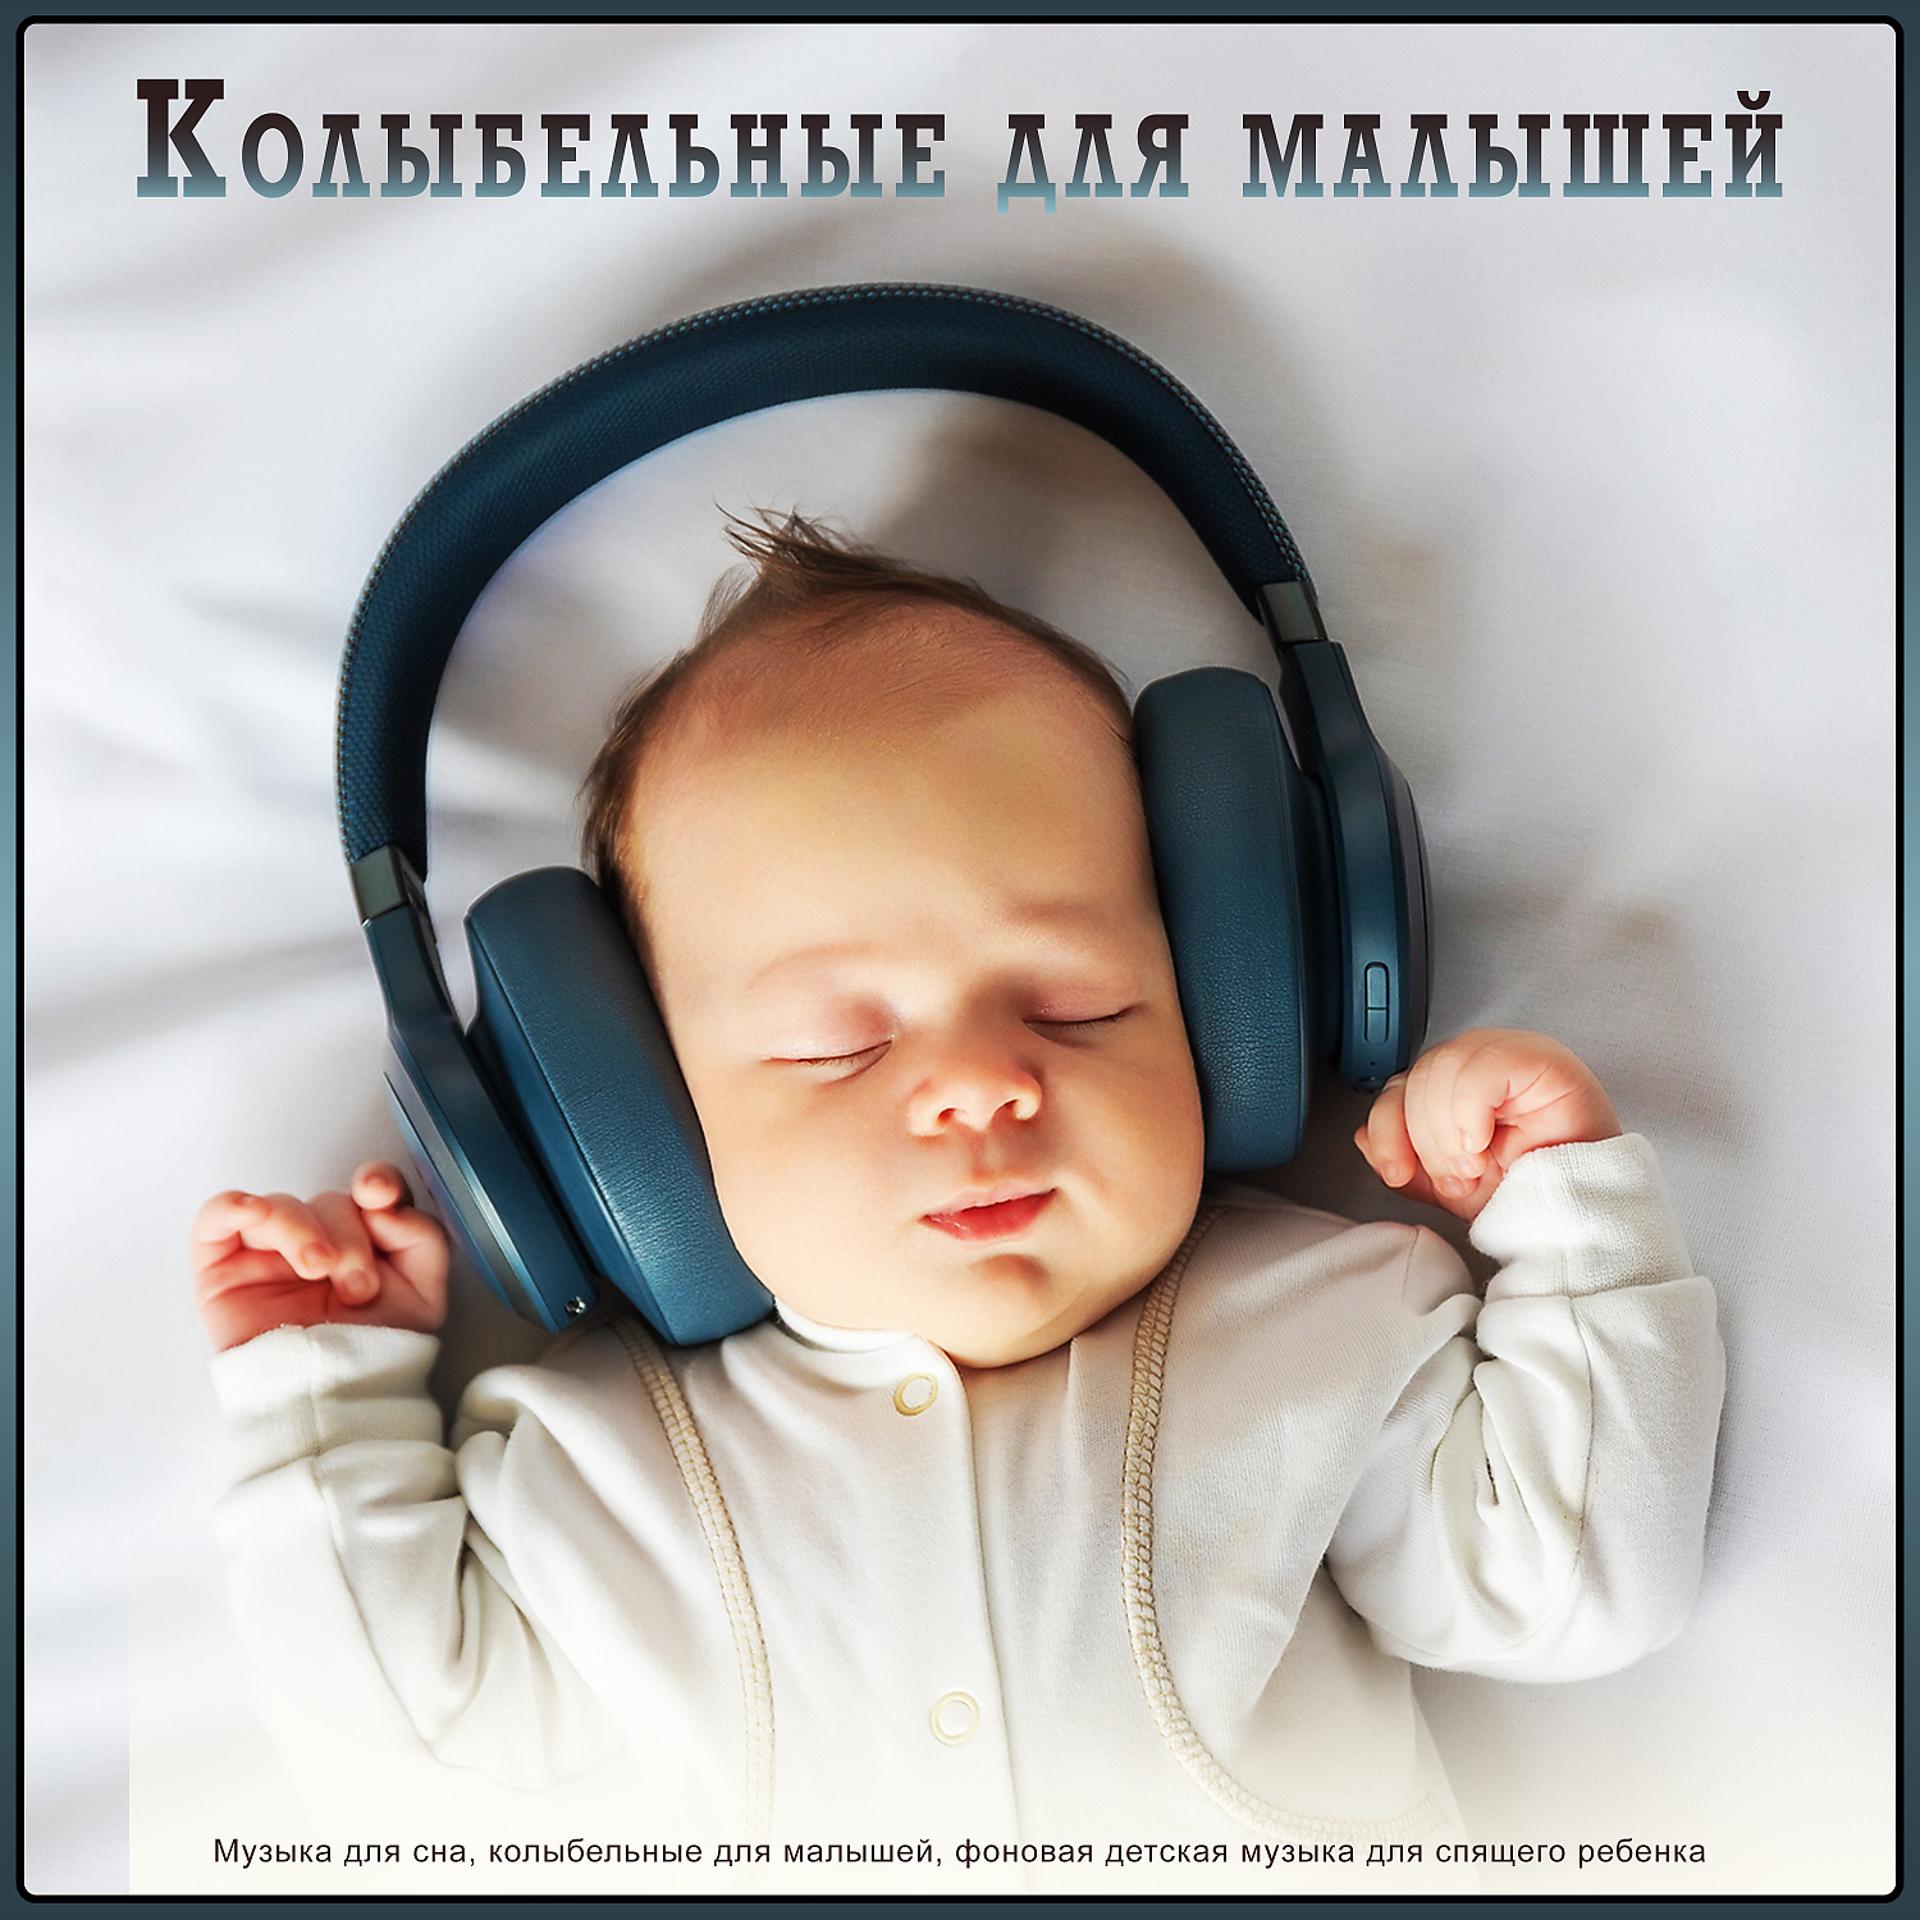 Музыка для сна младенца. Музыка для сна для малышей. Мелодии для засыпания малышей. Колыбельная для малышей успокаивающая. Слушать колыбельную песню для сна